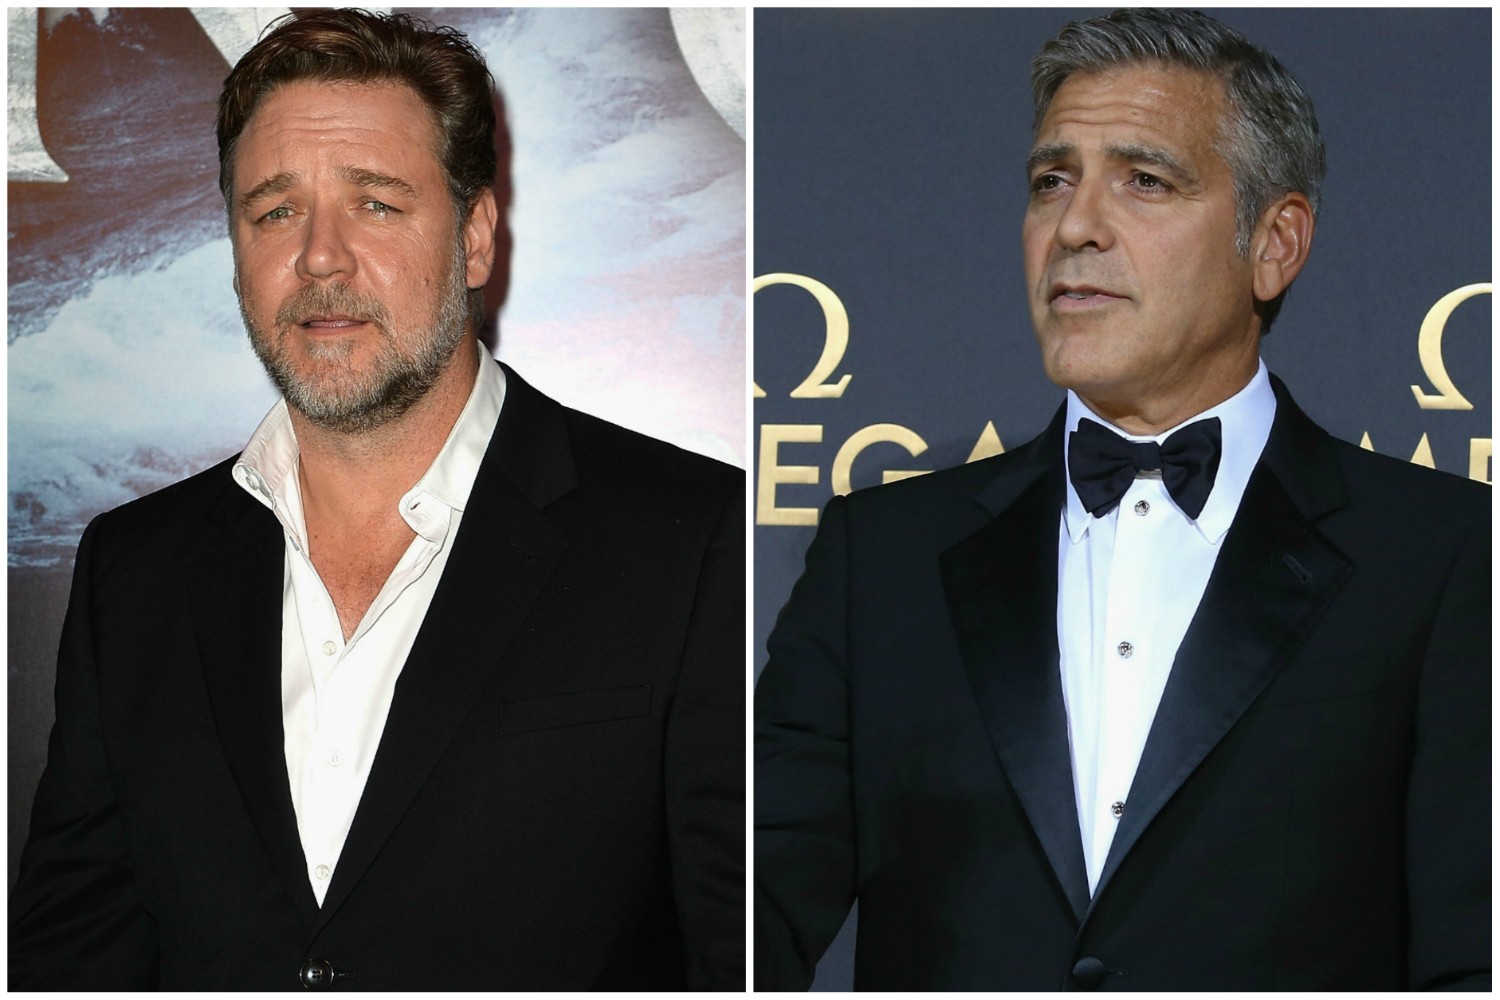 Os ânimos entre George Clooney (à dir.) e Russell Crowe já não estão tão exaltados. Ainda assim, esses dois atores não se toleram. Crowe acha Clooney 